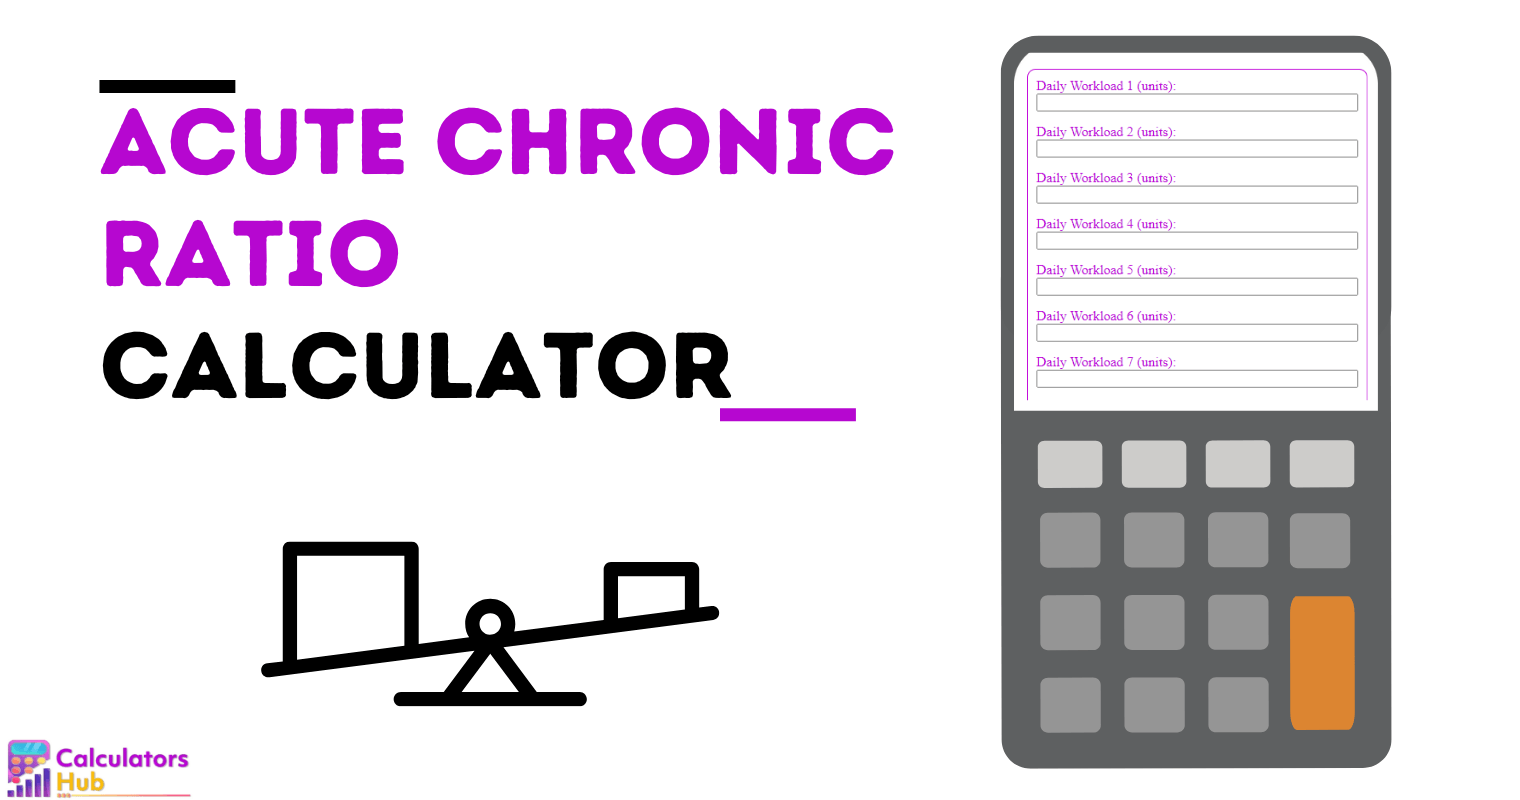 Acute Chronic Ratio Calculator